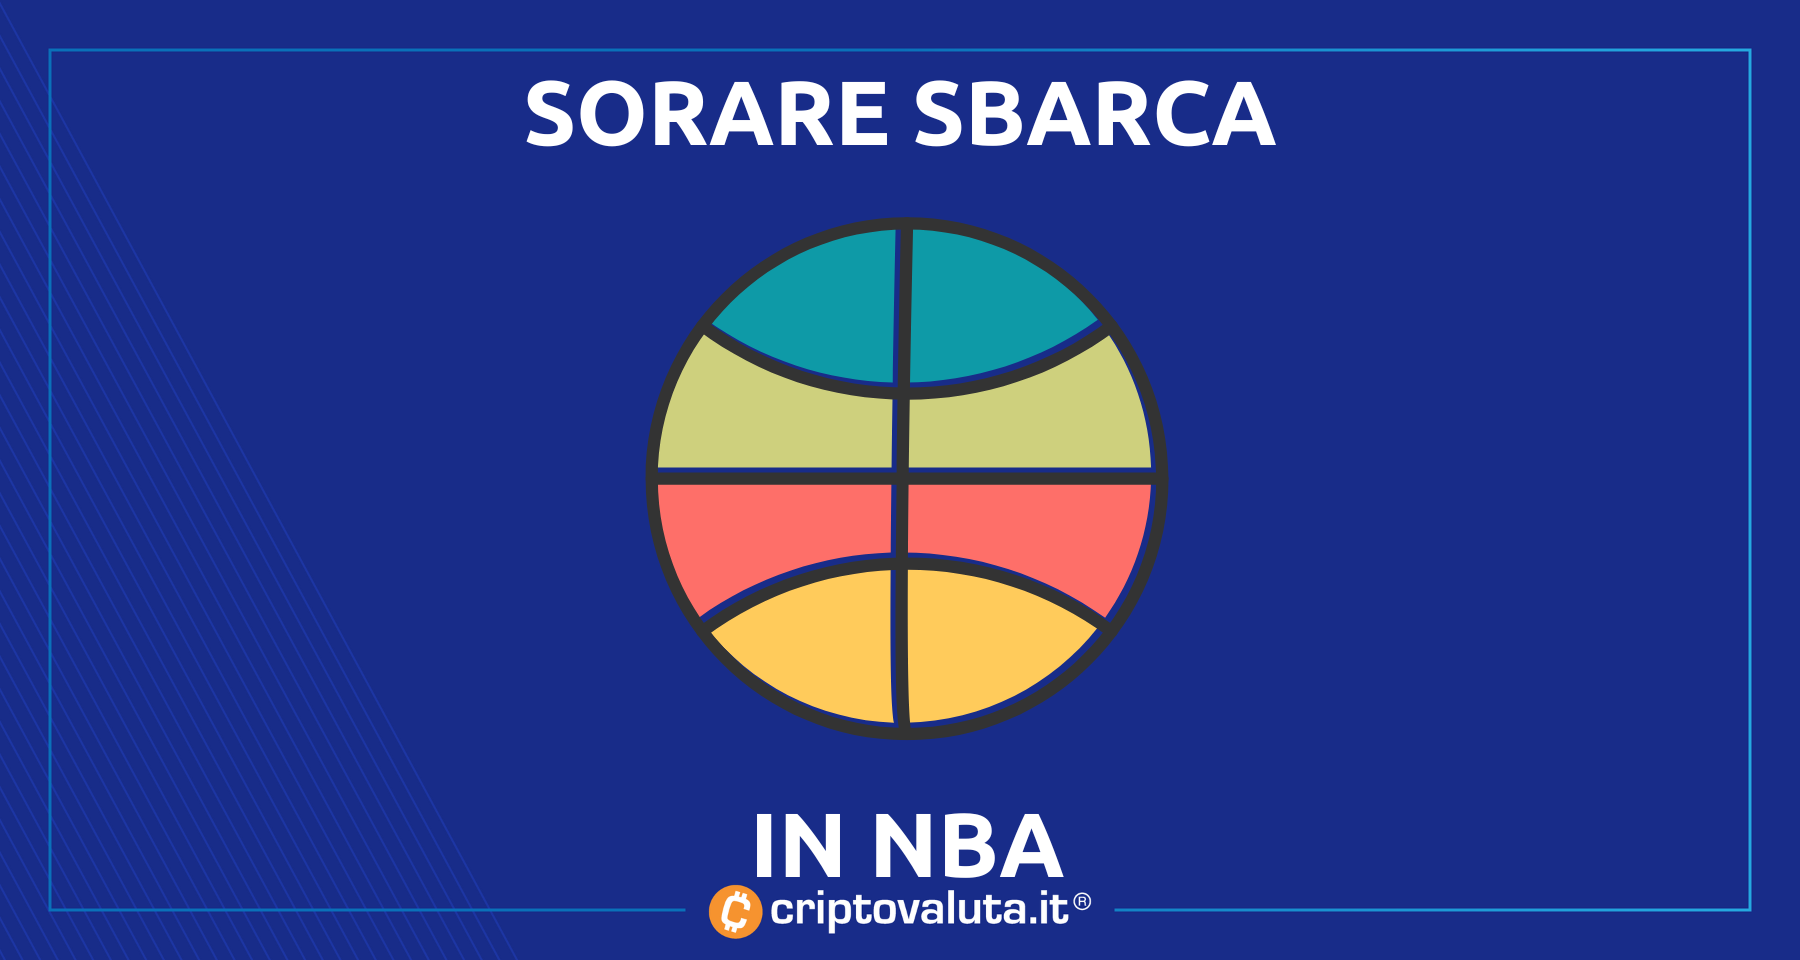 Sorare lancia la sua divisione NBA! | Il fantasy game on chain sbanca anche negli USA